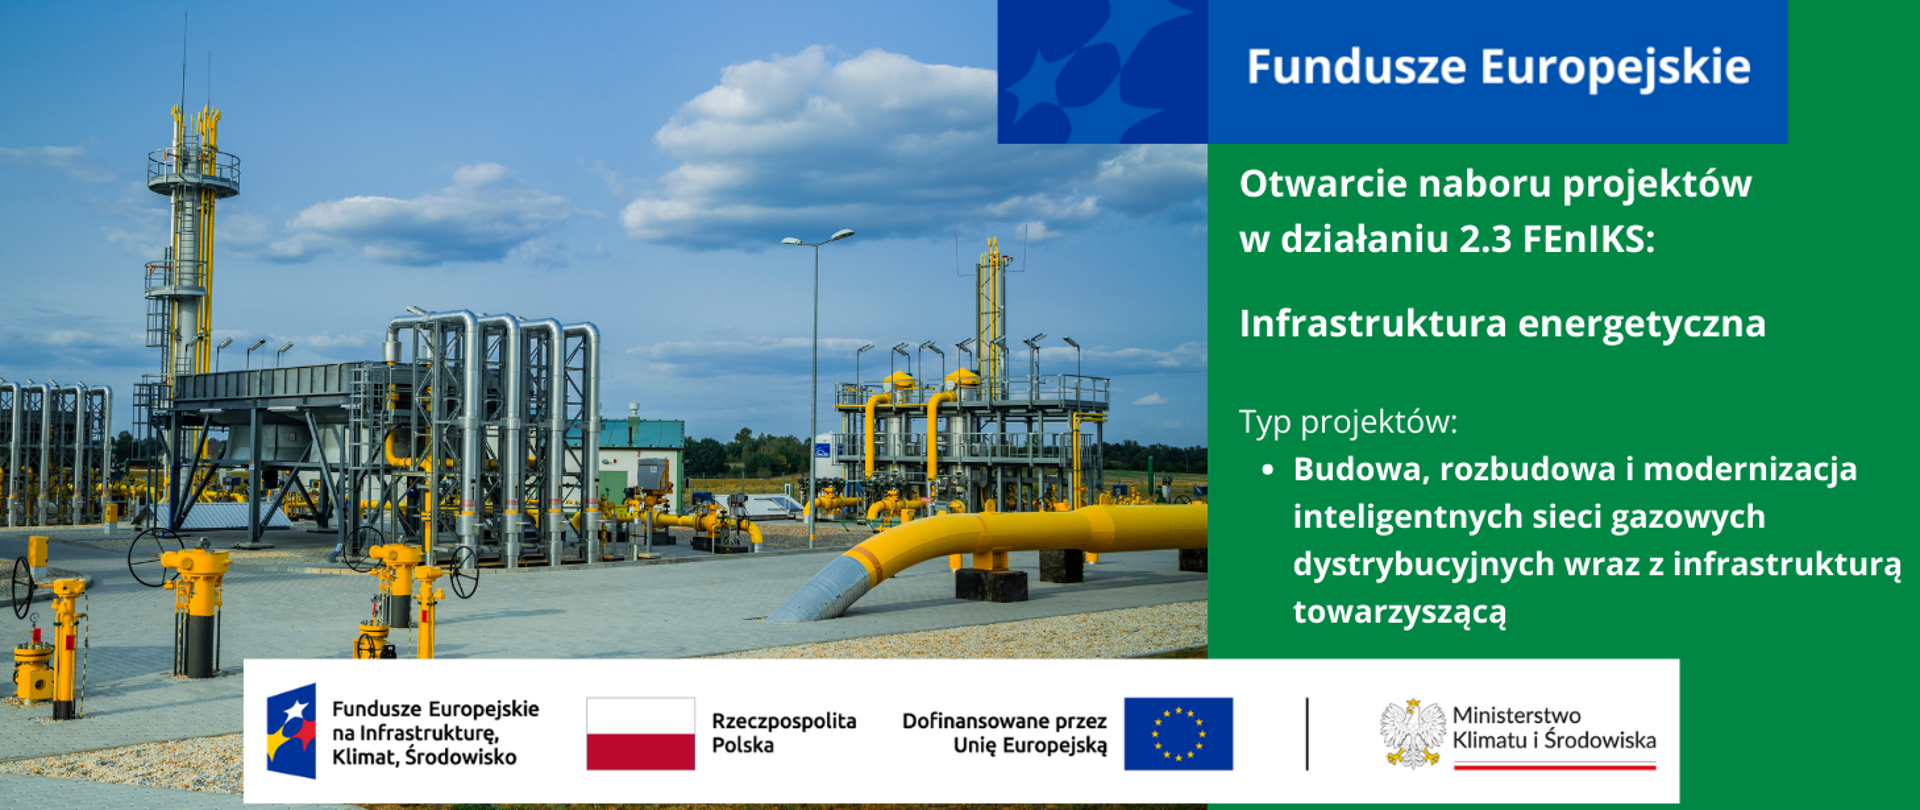 W lewej części grafiki widok infrastruktury gazowej, po prawej stronie informacja o otwarciu naboru projektów w działaniu 2.3 FEnIKS - Infrastruktura energetyczna